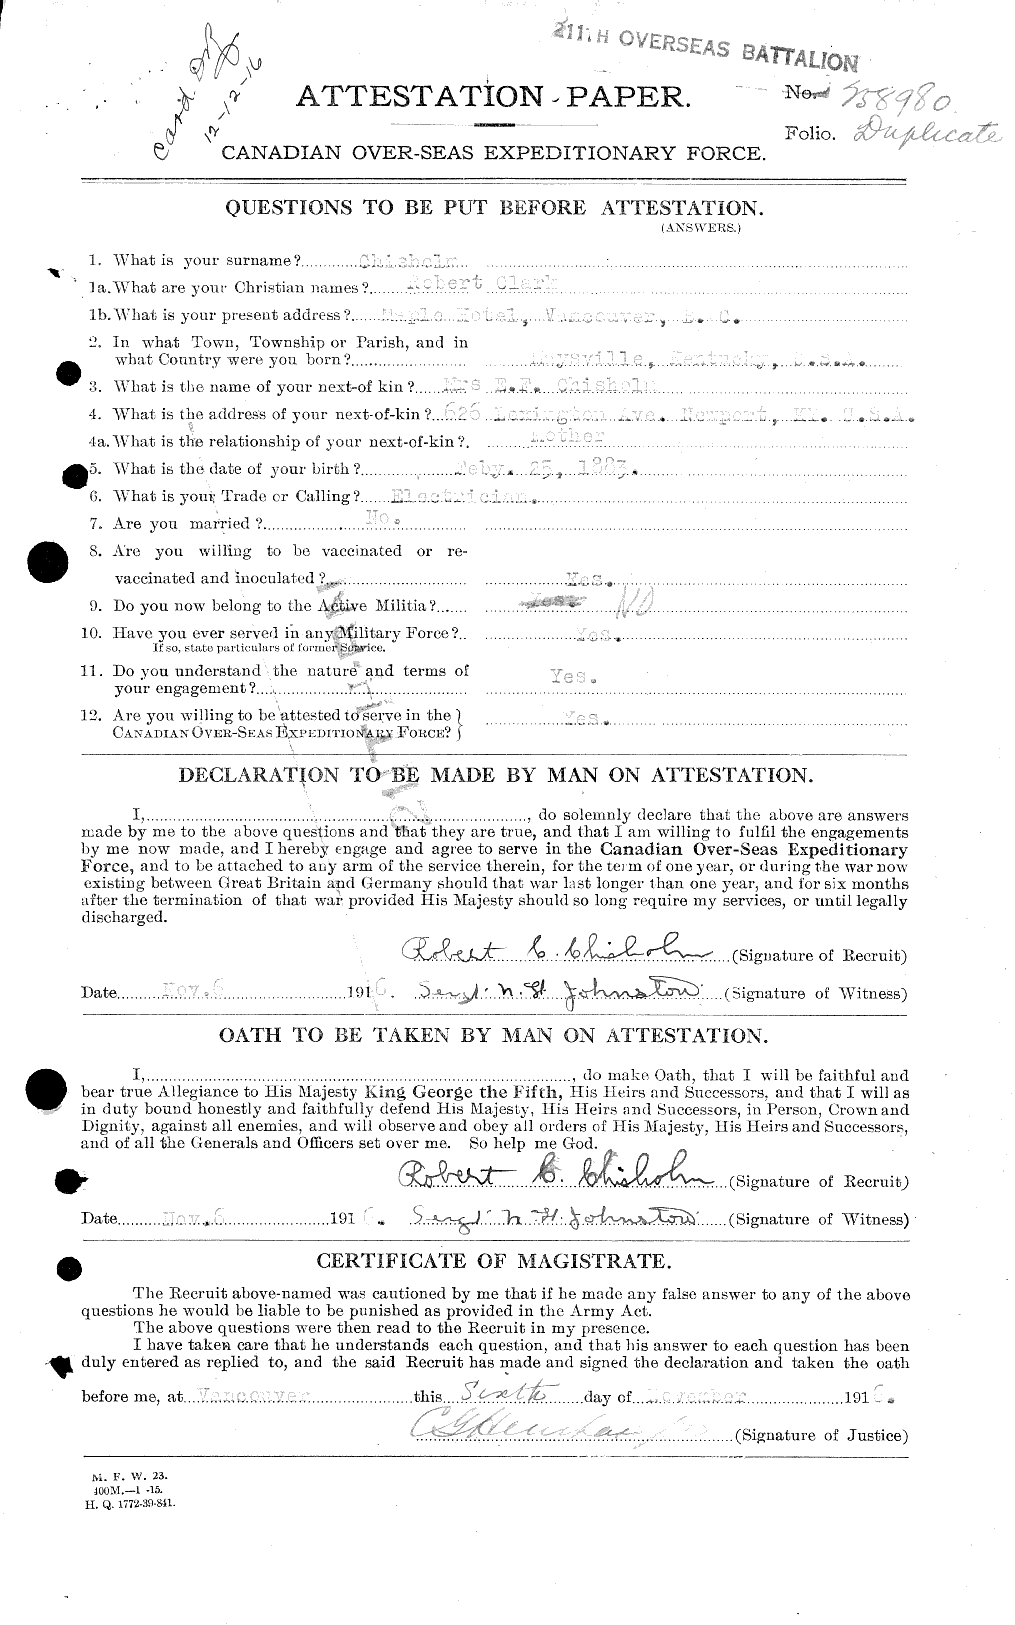 Dossiers du Personnel de la Première Guerre mondiale - CEC 018353a